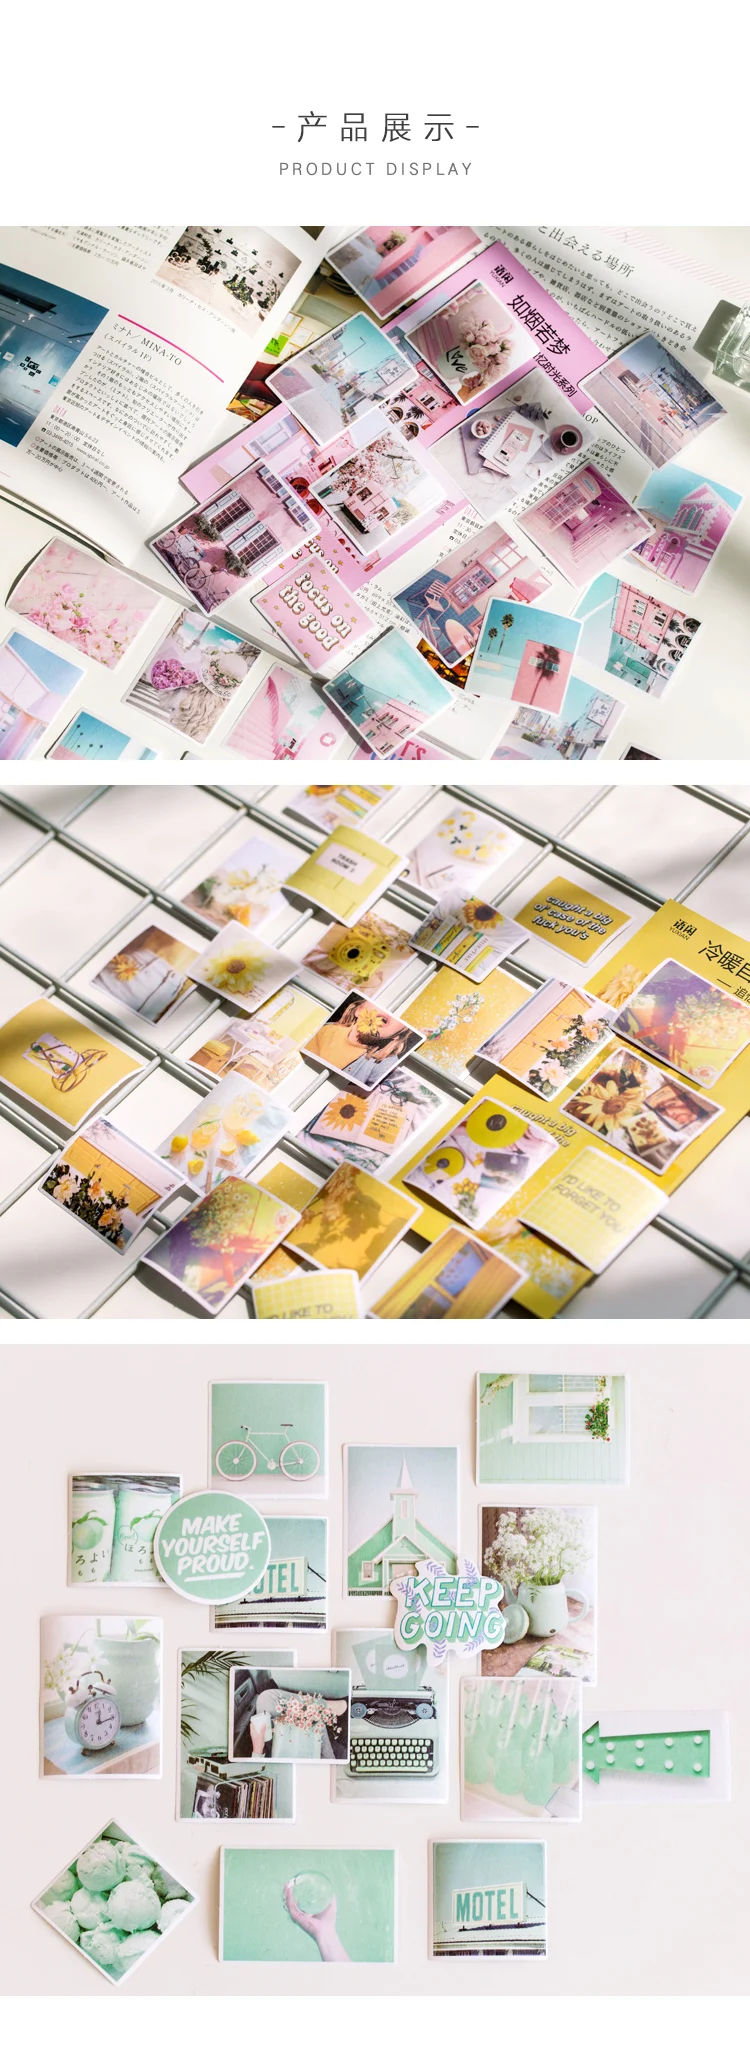 MyPretties 60 шт./упак. счастливые воспоминания V2 Ins Стиль фото декоративные из рисовой бумаги наклейки цветок Винтаж Кофе наклейки для ежедневника